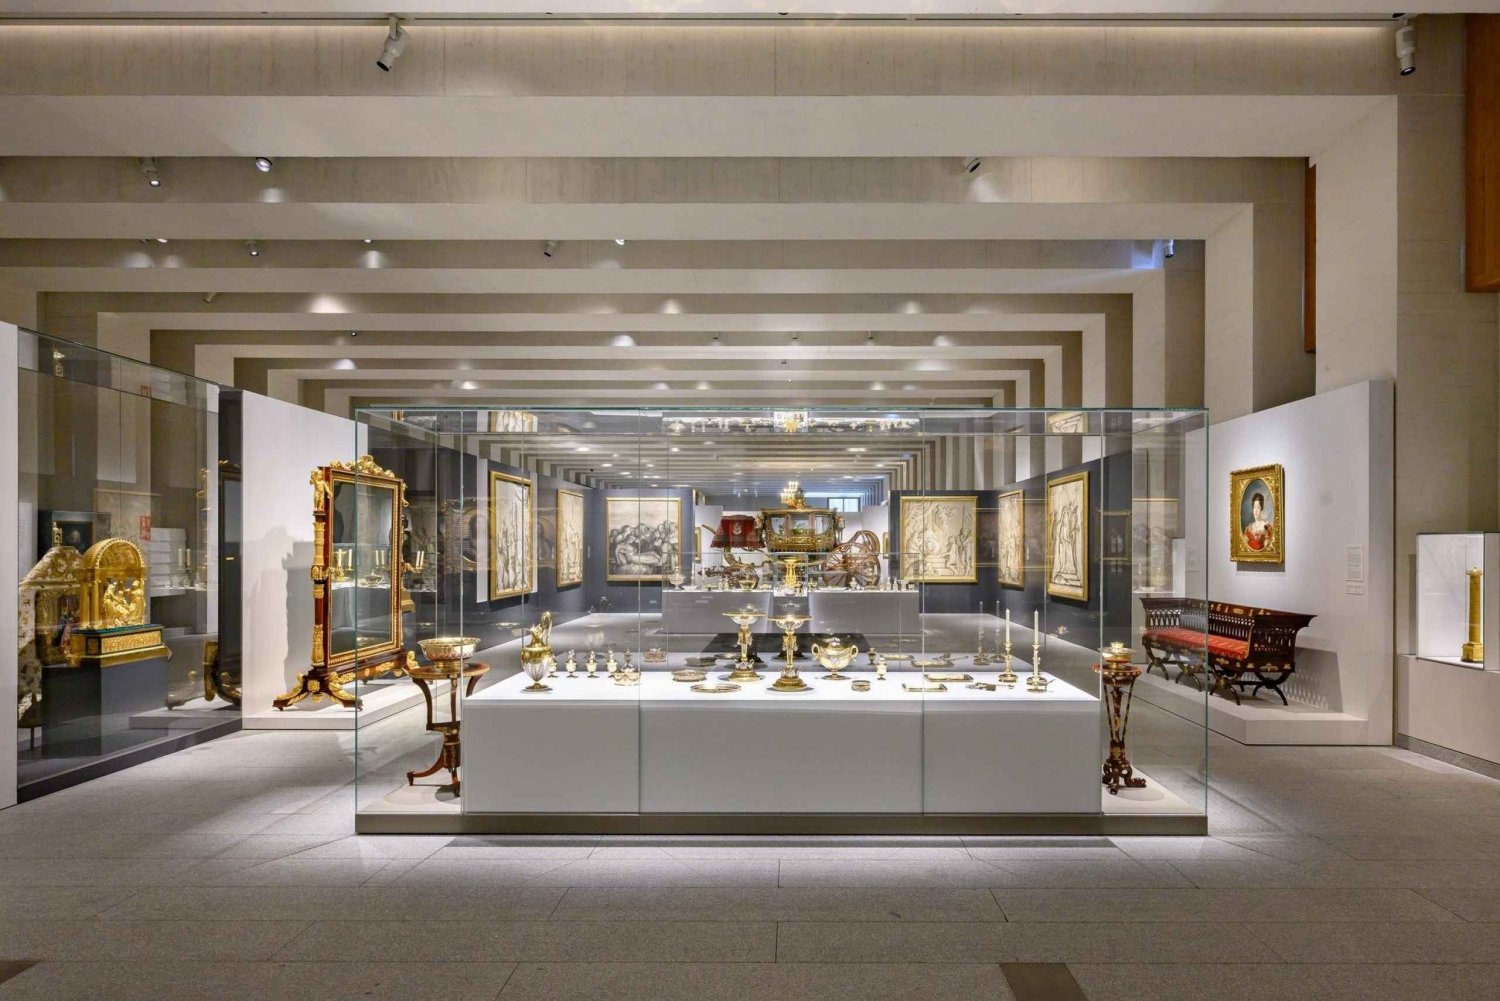 Madrid: Galeria de las Colecciones Reales og det kongelige palads